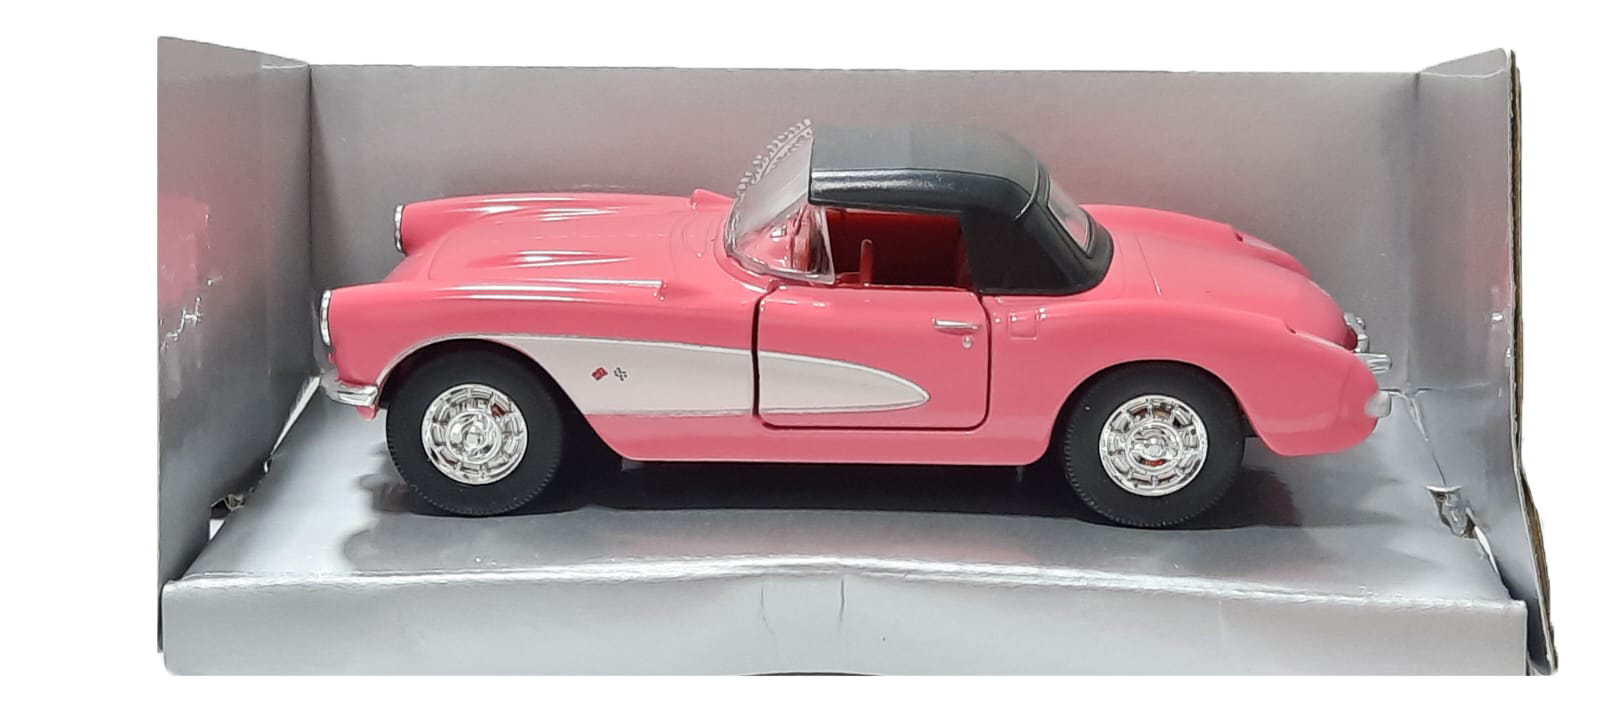 Colección autos clásicos - Chevrolet Corvette 1957